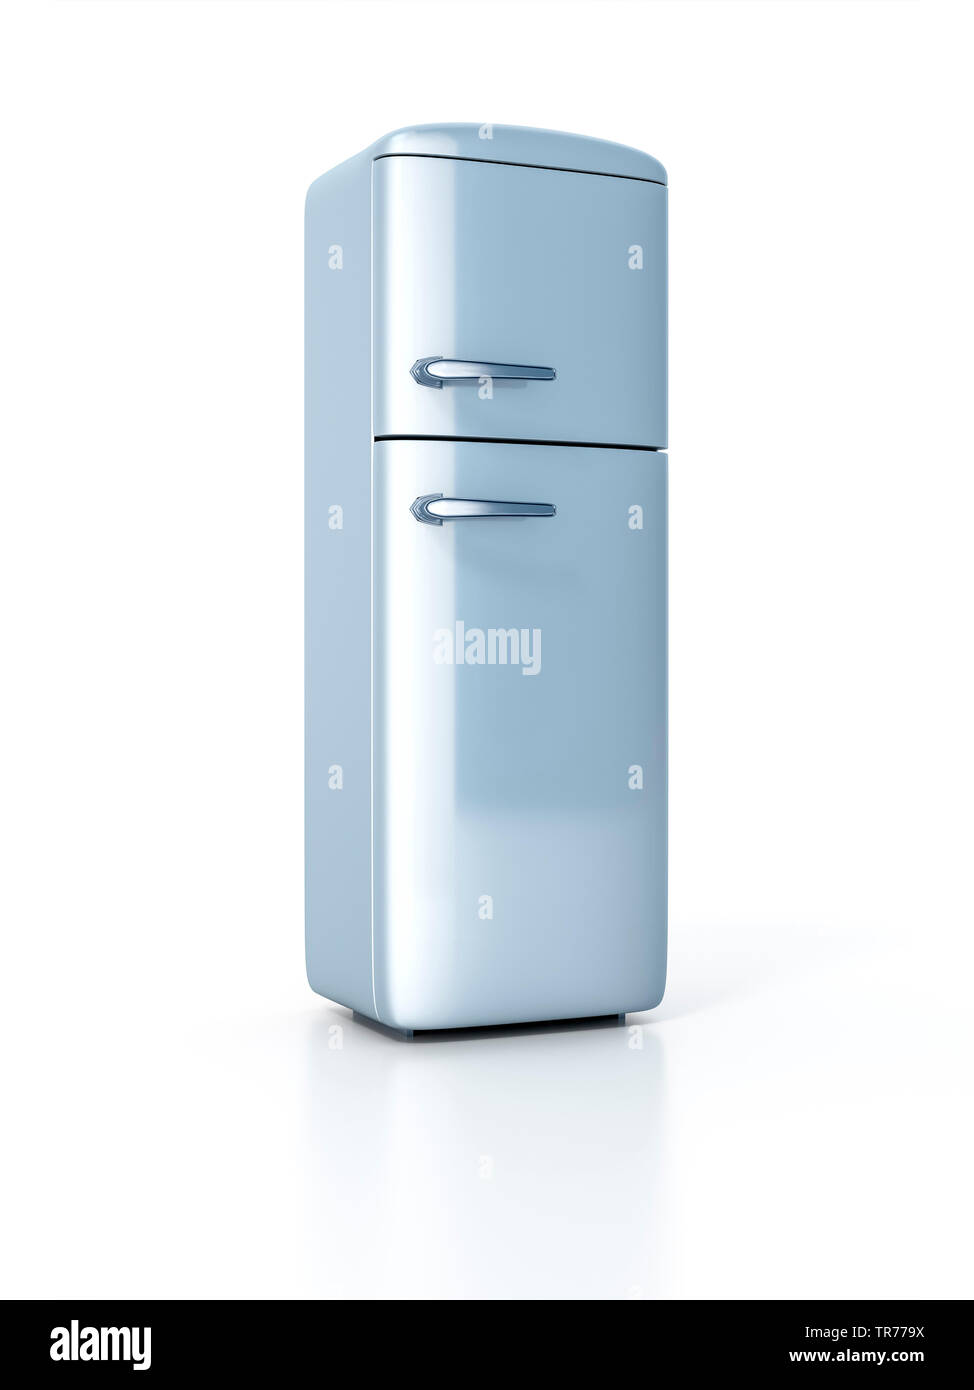 Grau, Kühlschrank mit Gefrierfach, Computer Graphik Stockfotografie - Alamy